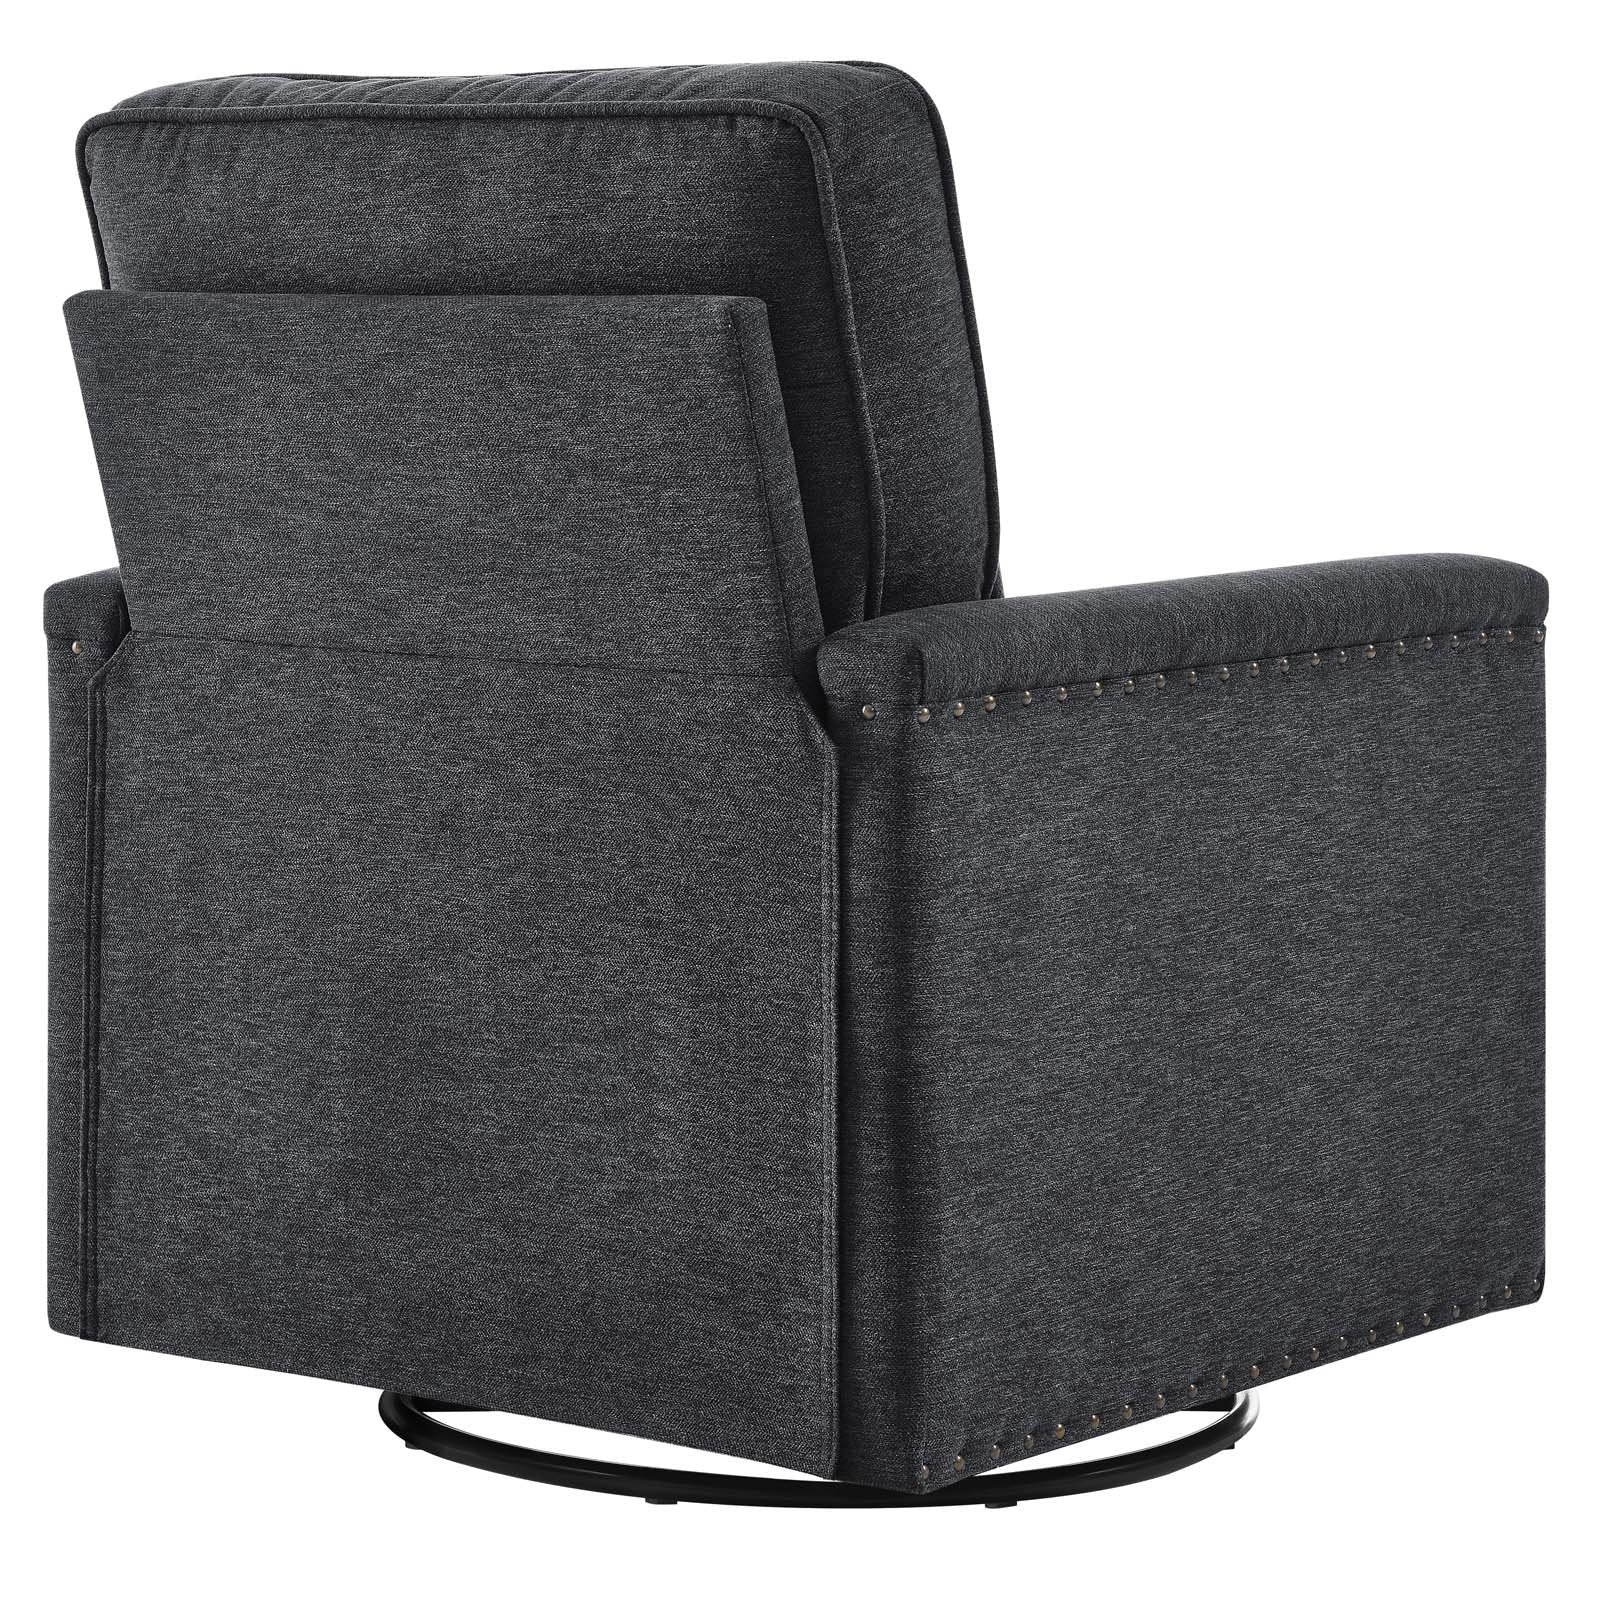 Ashton Upholstered Fabric Swivel Chair - East Shore Modern Home Furnishings